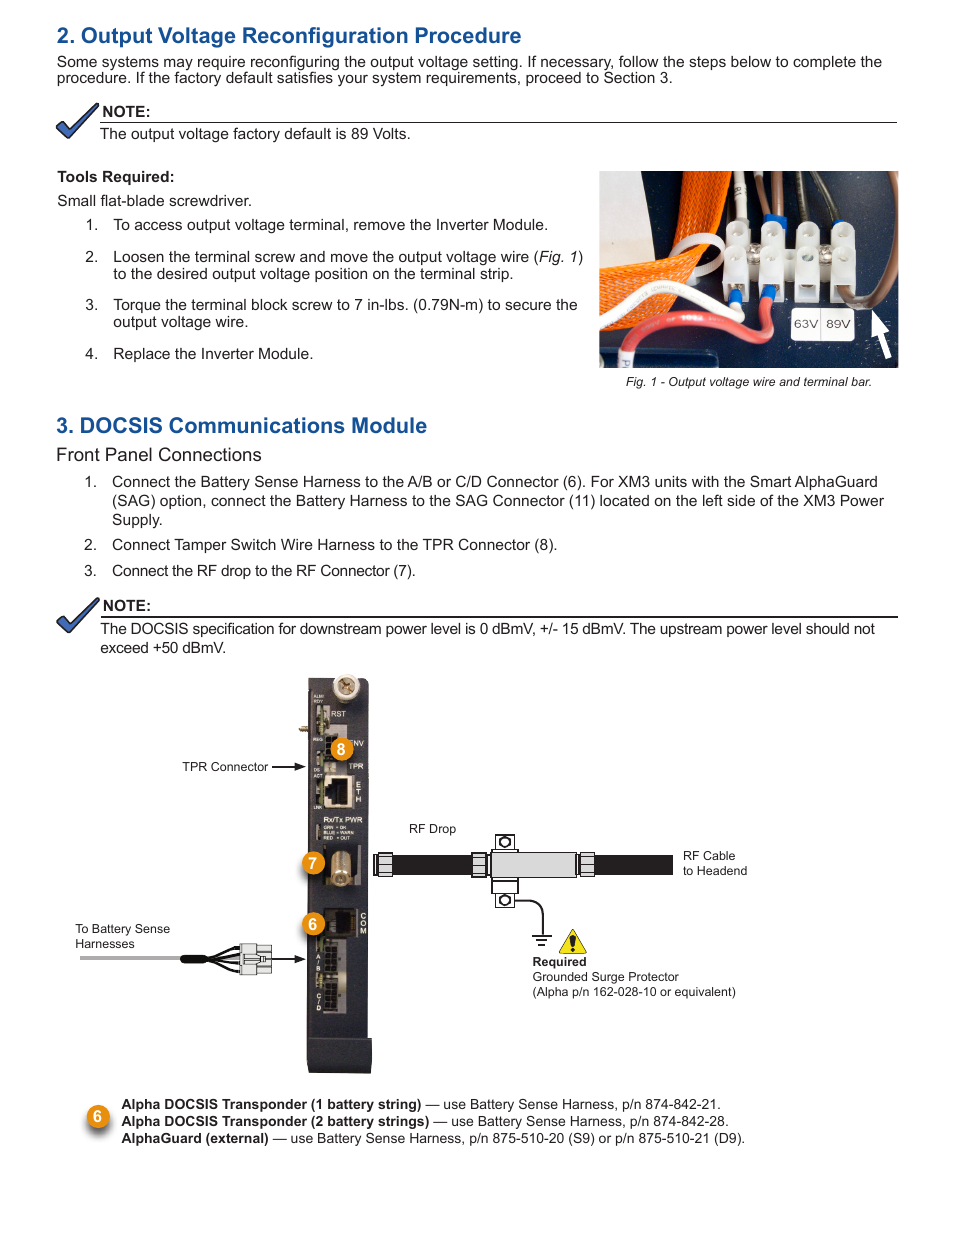 Docsis communications module, Output voltage reconfiguration procedure